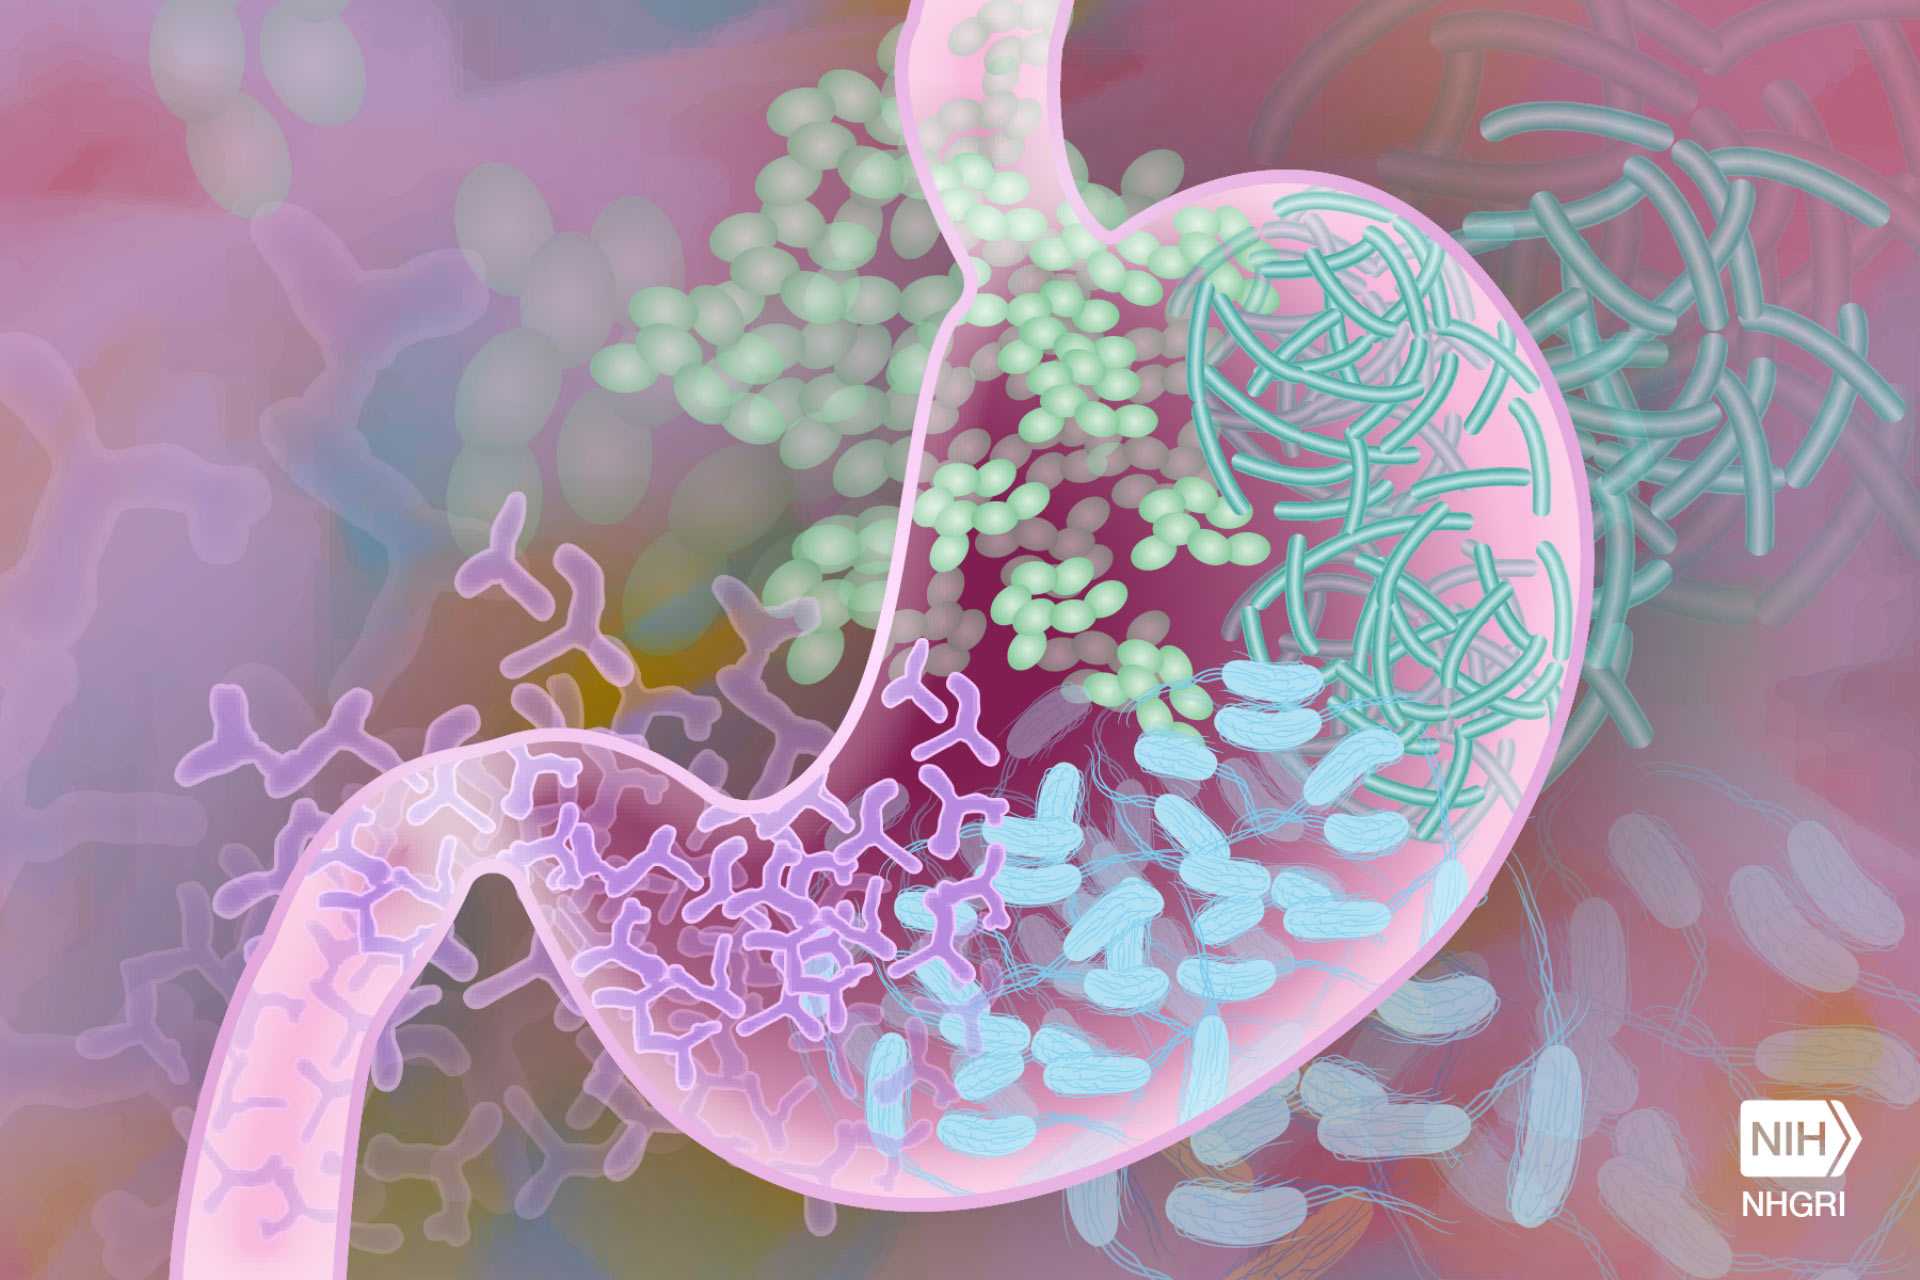 Материнские кишечные бактерии поделились генами с микробиомом детей